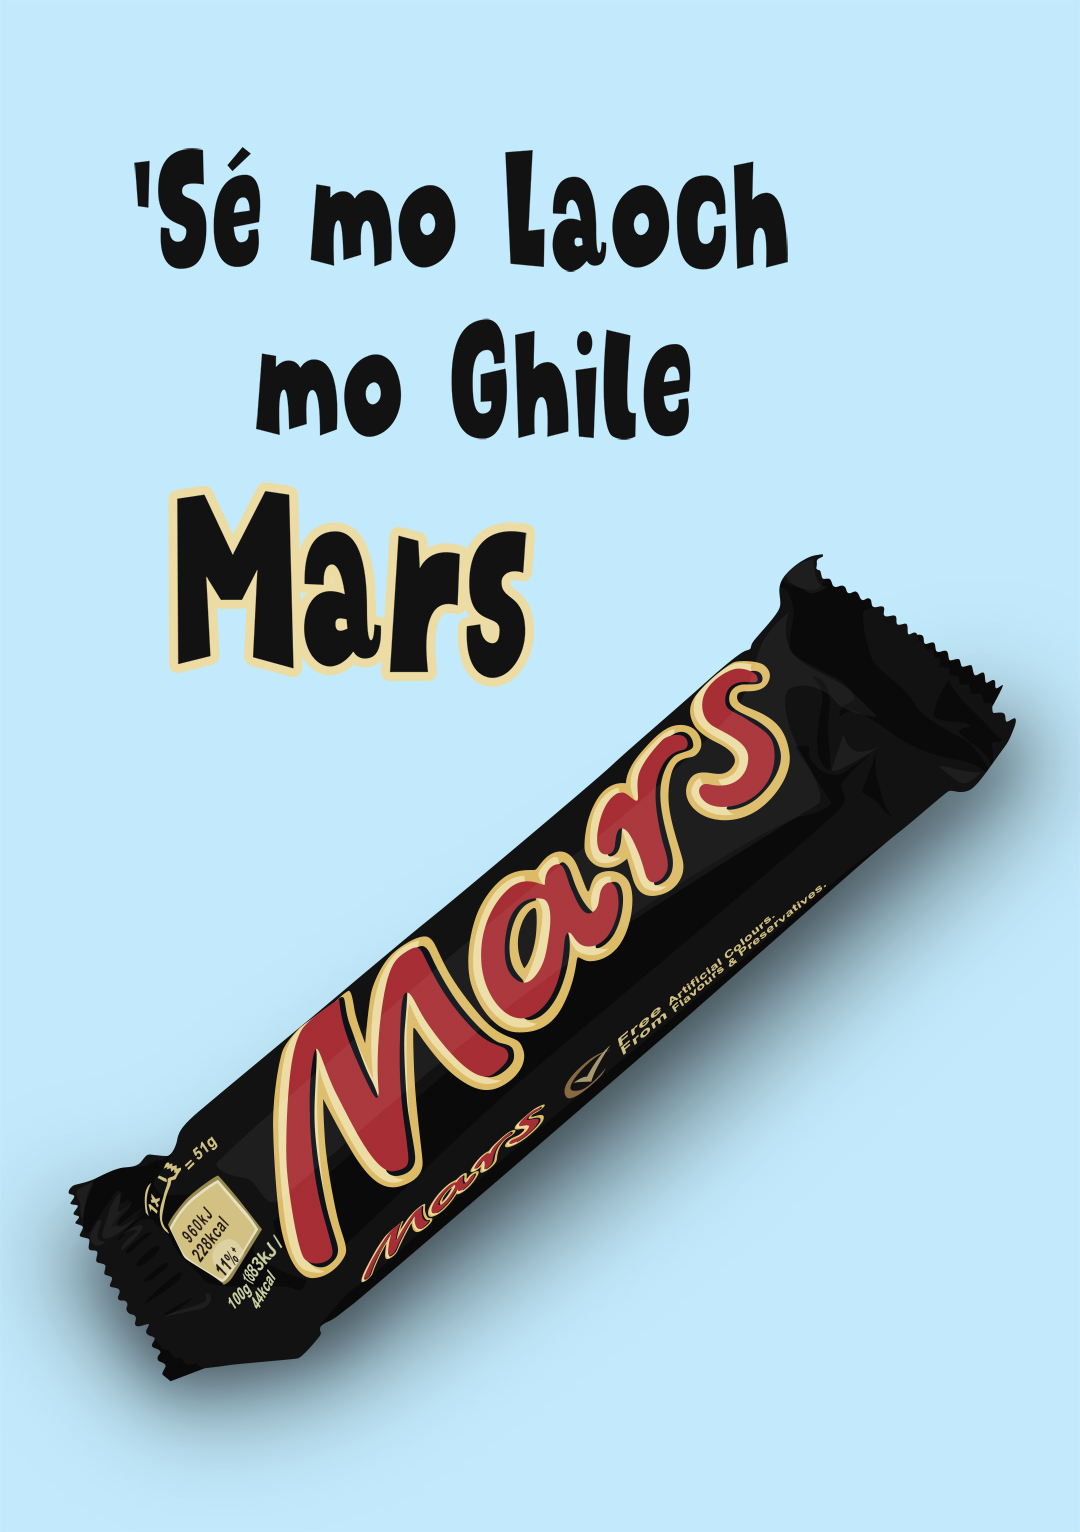 'Sé mo Laoch mo Ghile Mars